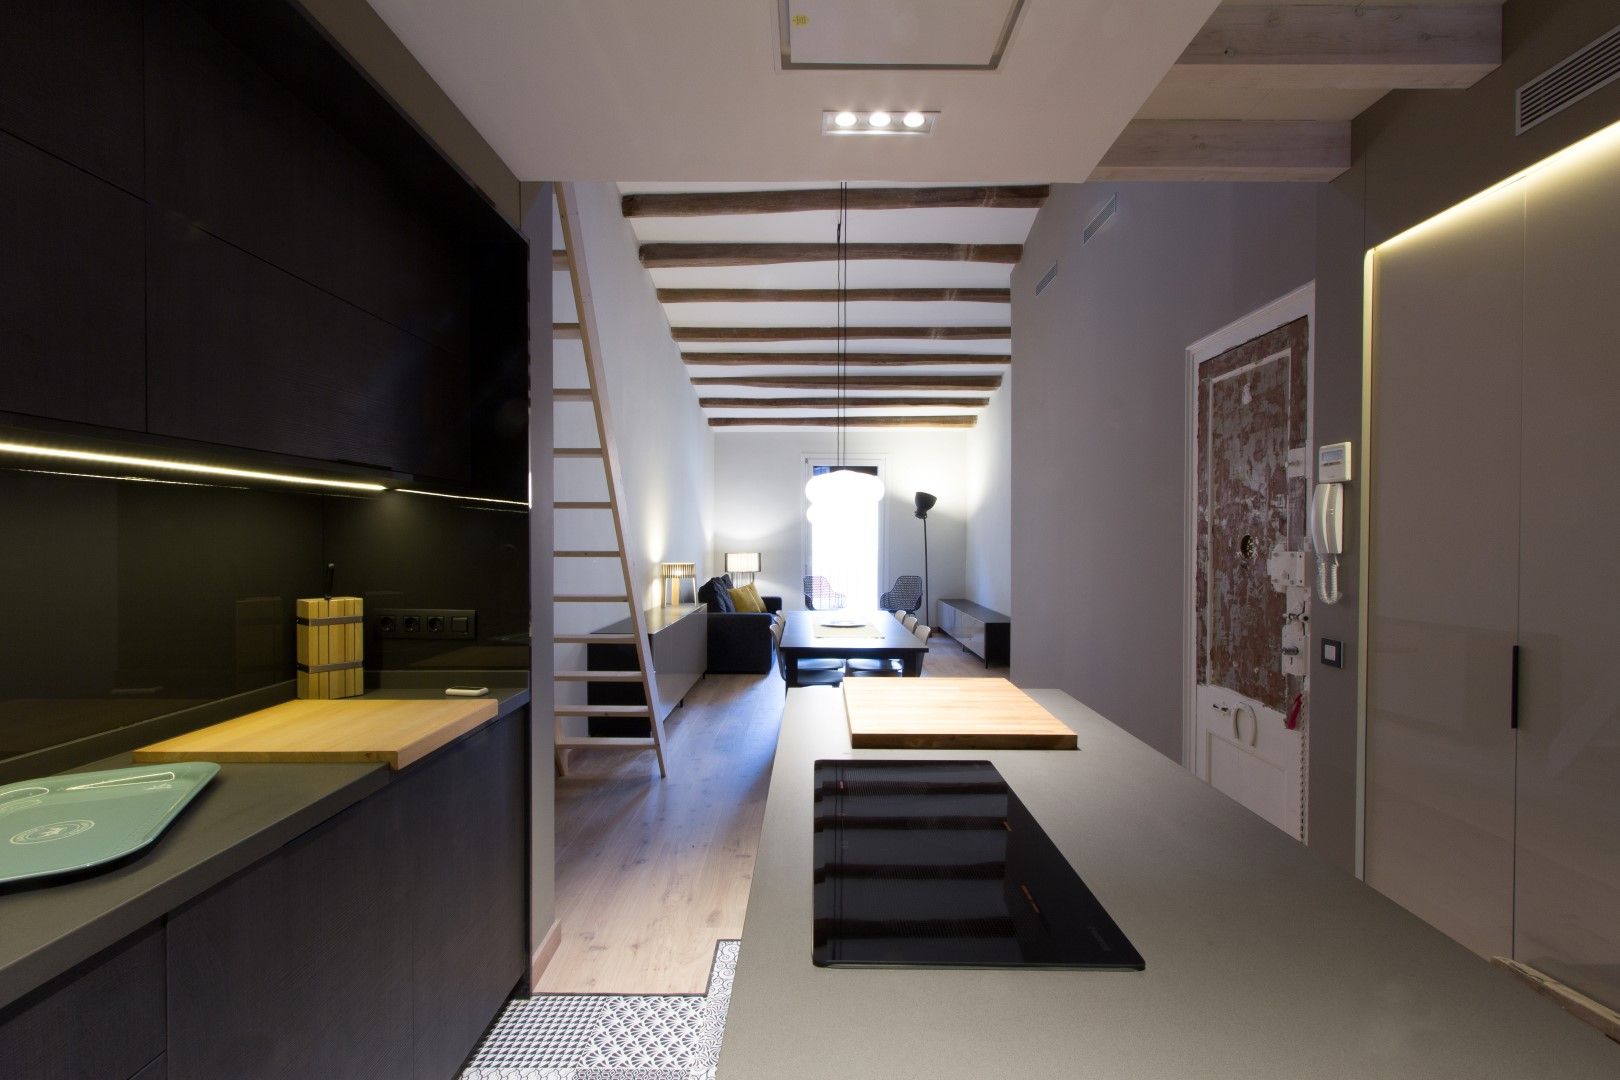 LOFT EN BARCELONA Proyecto de interiorismo para convertir un antiguo piso en un loft donde se valora la calidad del espacio, CREAPROJECTS. Interior design. CREAPROJECTS. Interior design. Cuisine intégrée